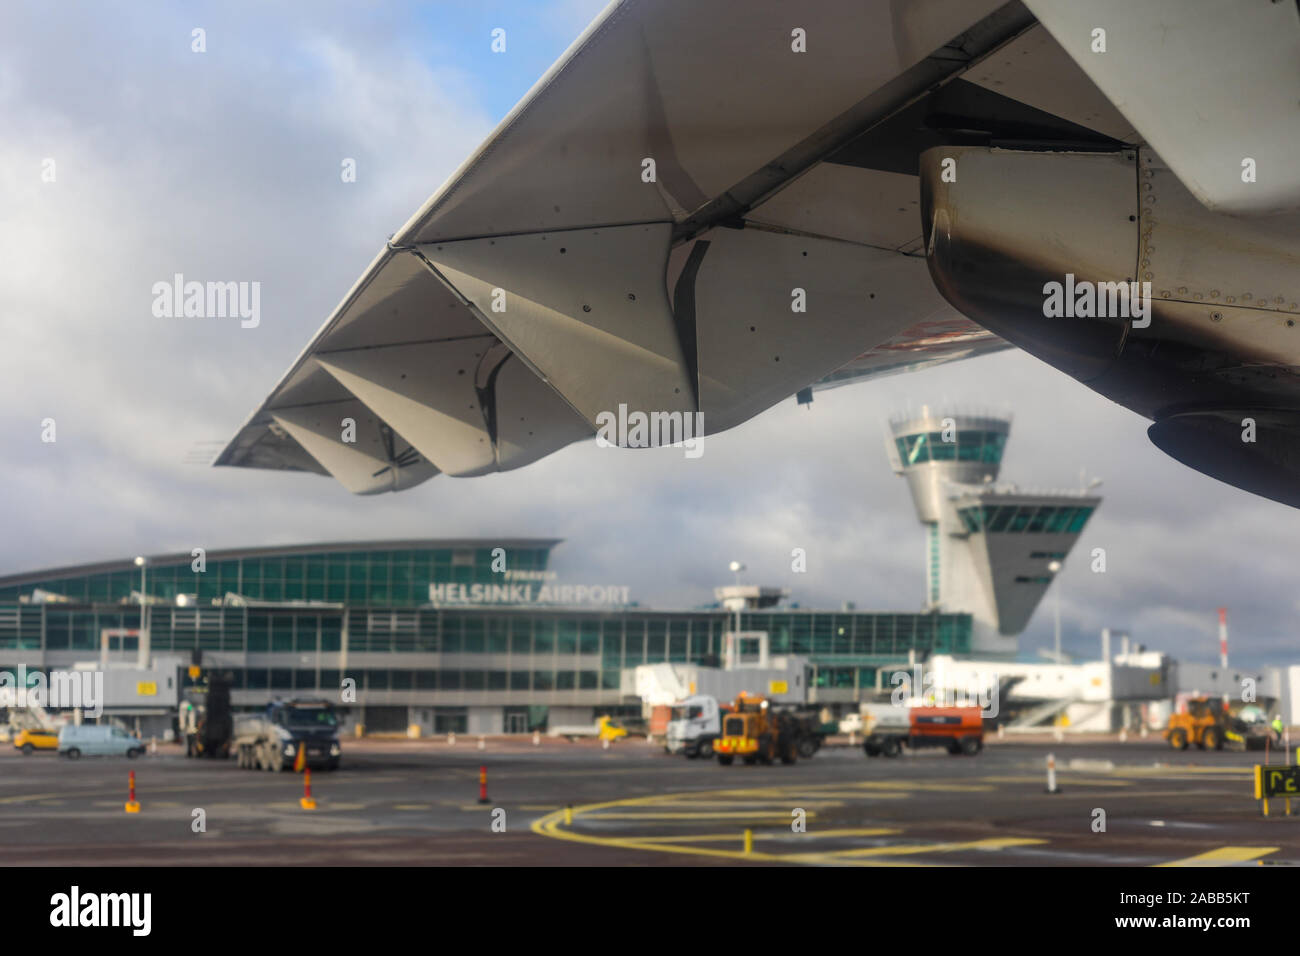 El aeropuerto de Helsinki, enmarcadas por ala de avión, el enfoque selectivo Foto de stock